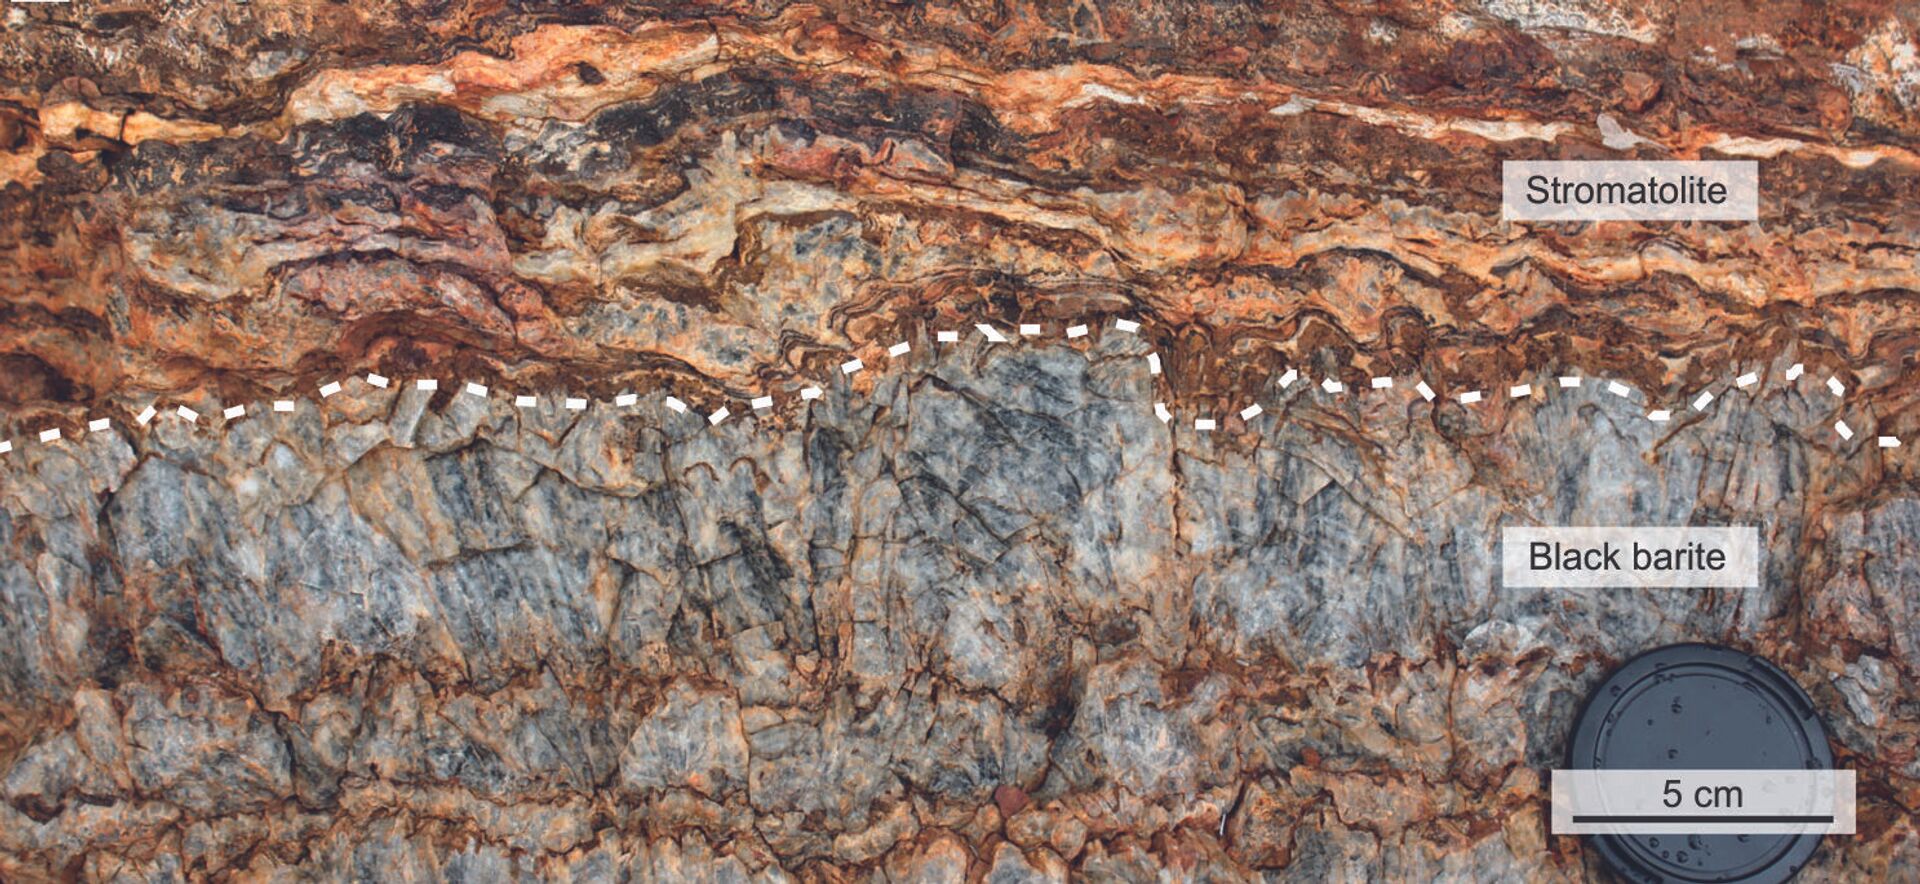 'Ingrediente para vida' é descoberto em rochas de 3,5 bilhões de anos na Austrália (FOTO) - Sputnik Brasil, 1920, 22.02.2021